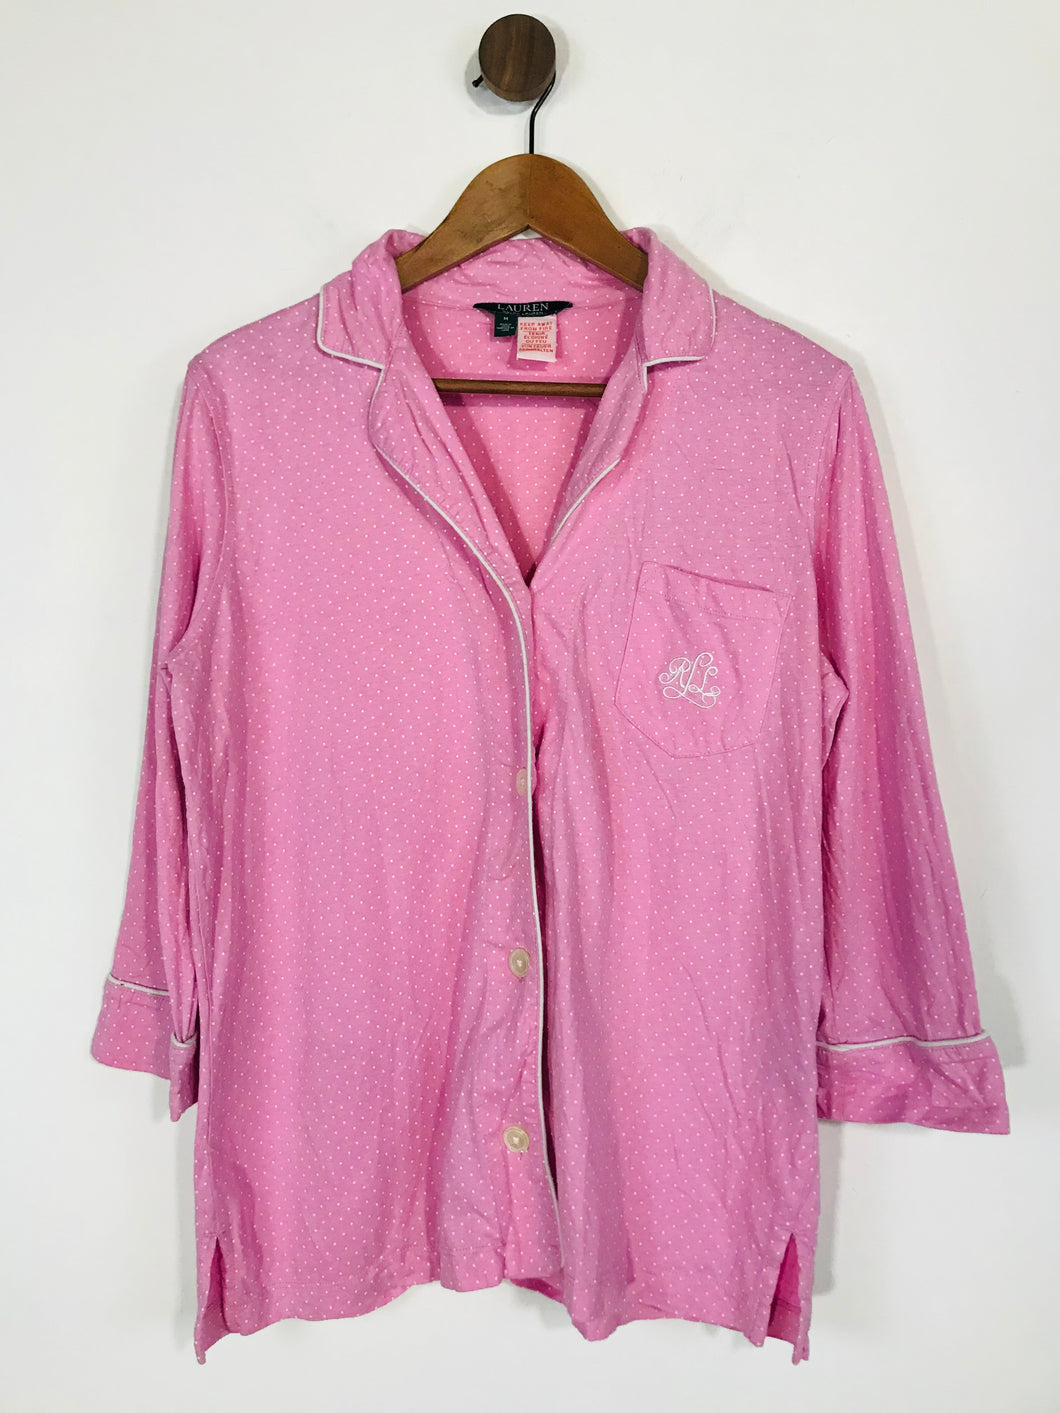 Lauren Ralph Lauren Women's Long Sleeve Lounge Button-Up Shirt | M UK10-12 | Pink